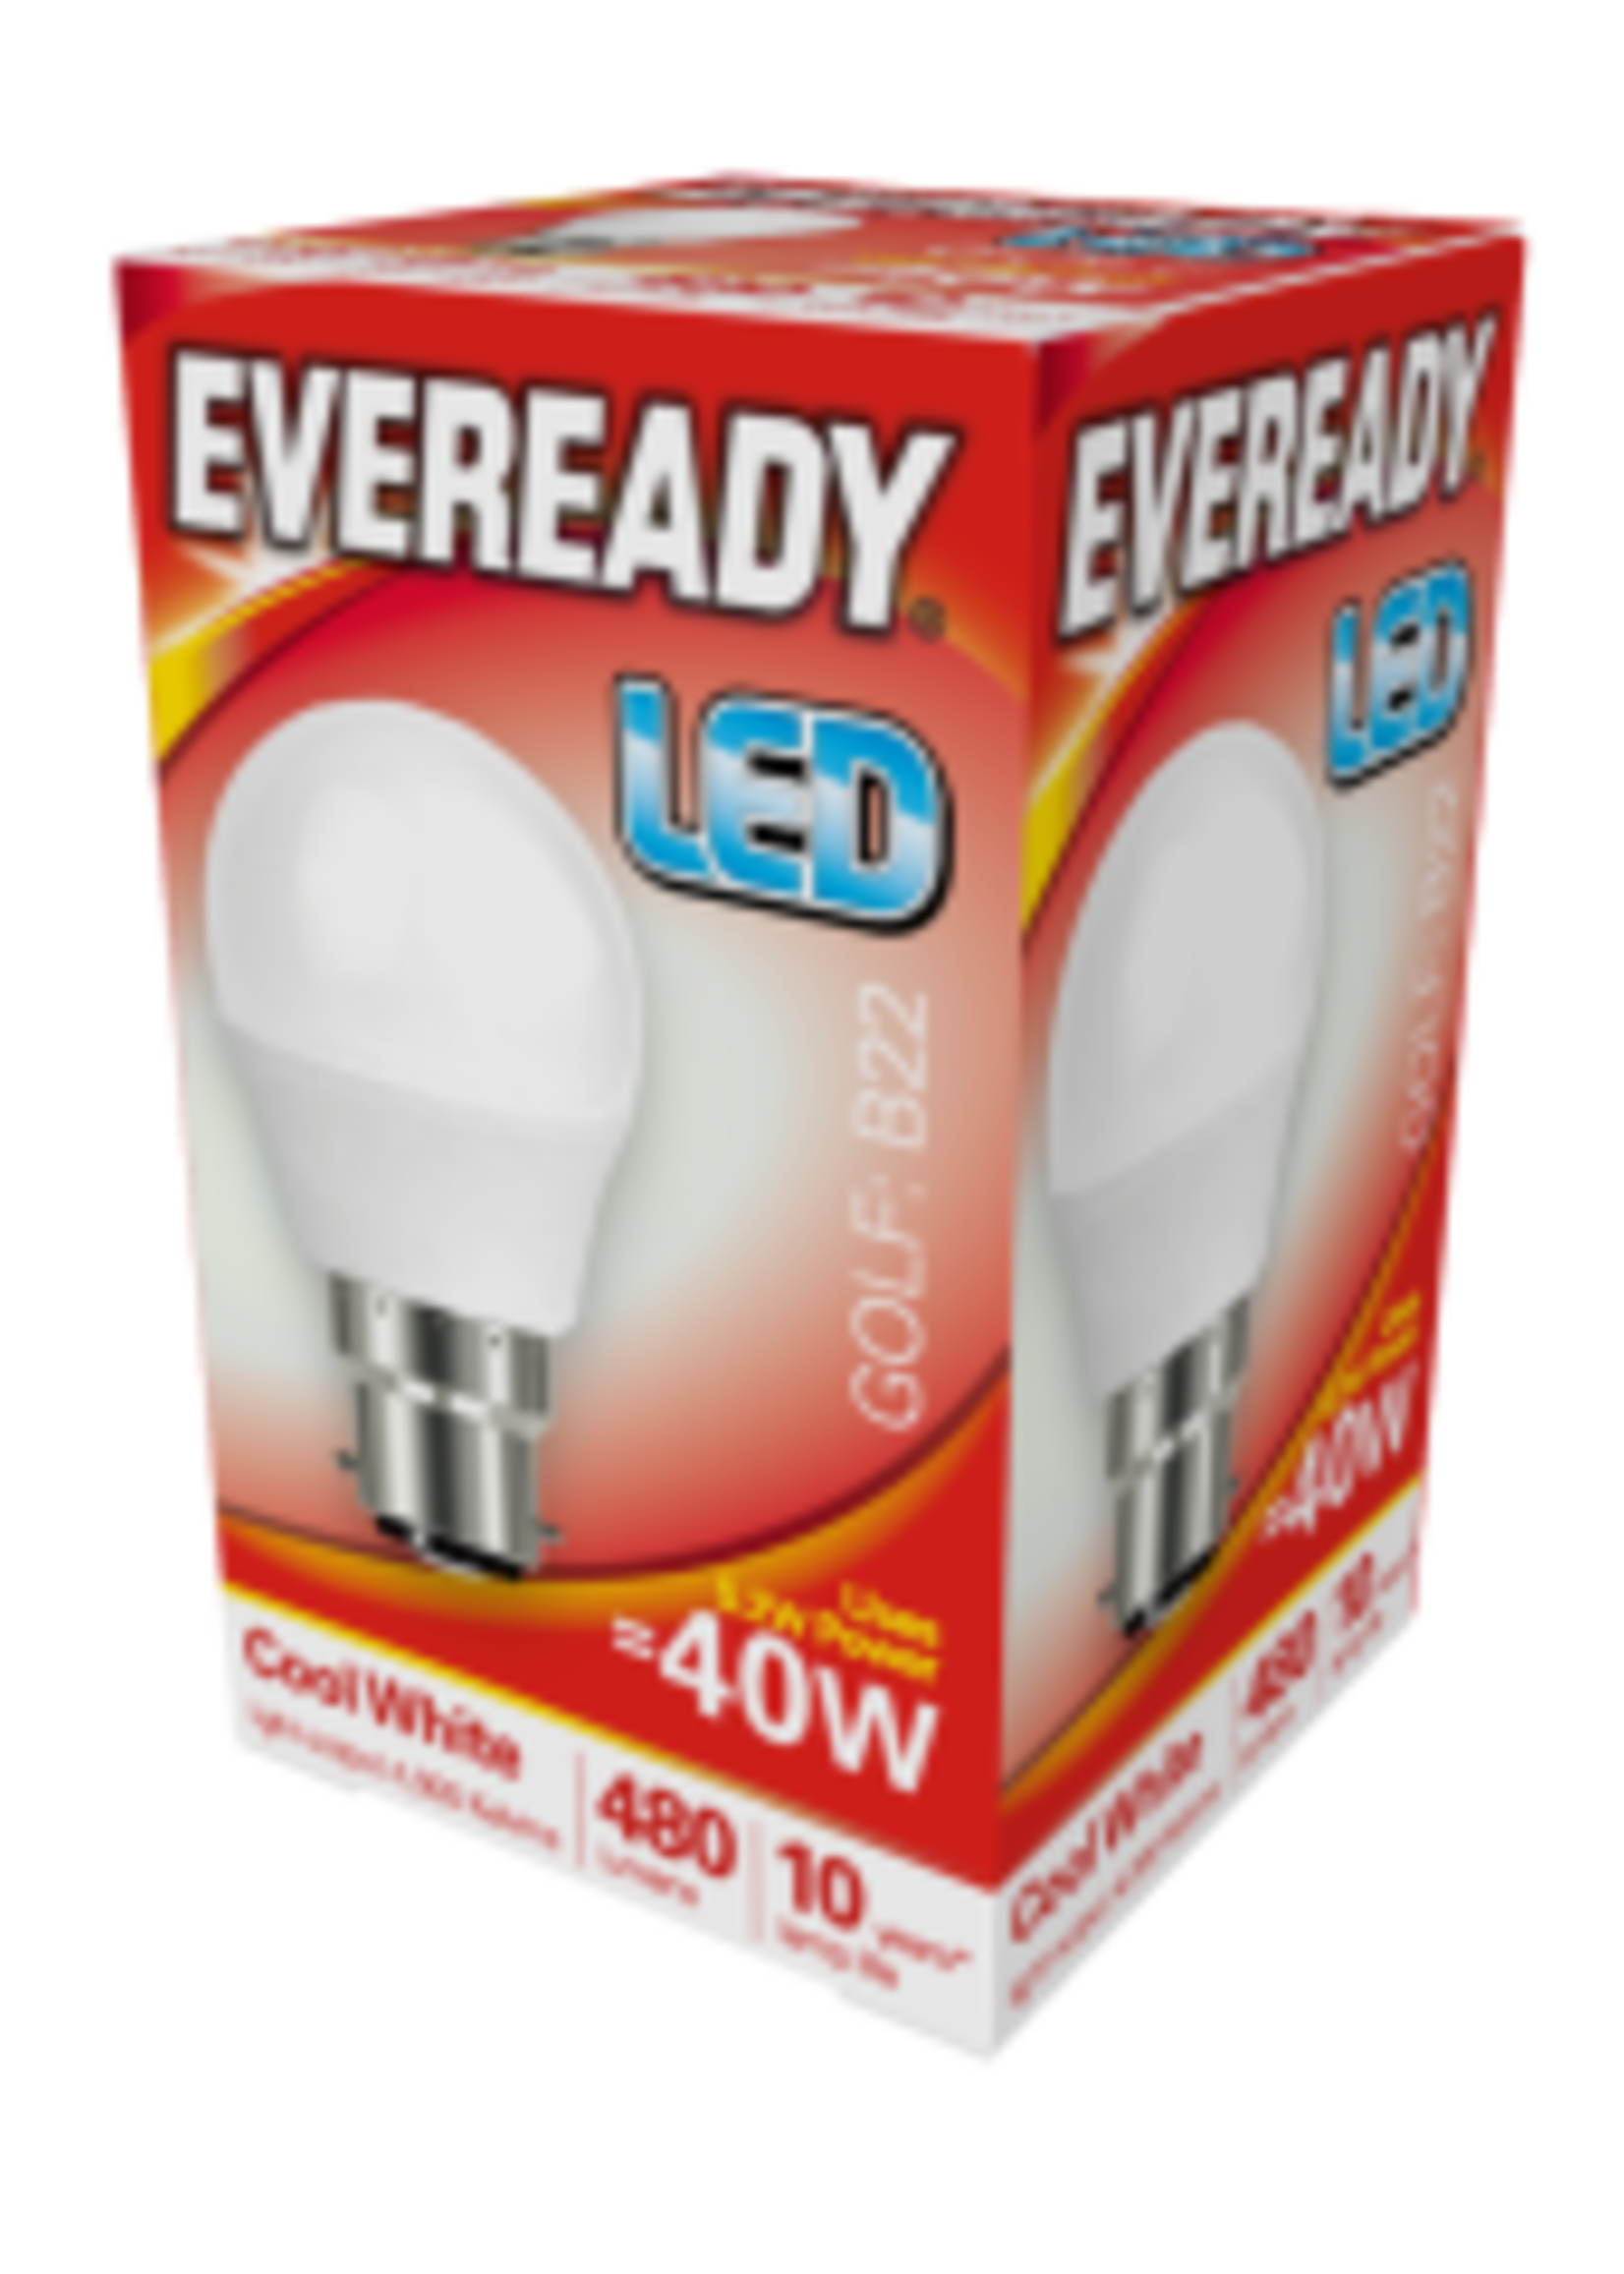 Eveready Eveready  LED Golf Bulb